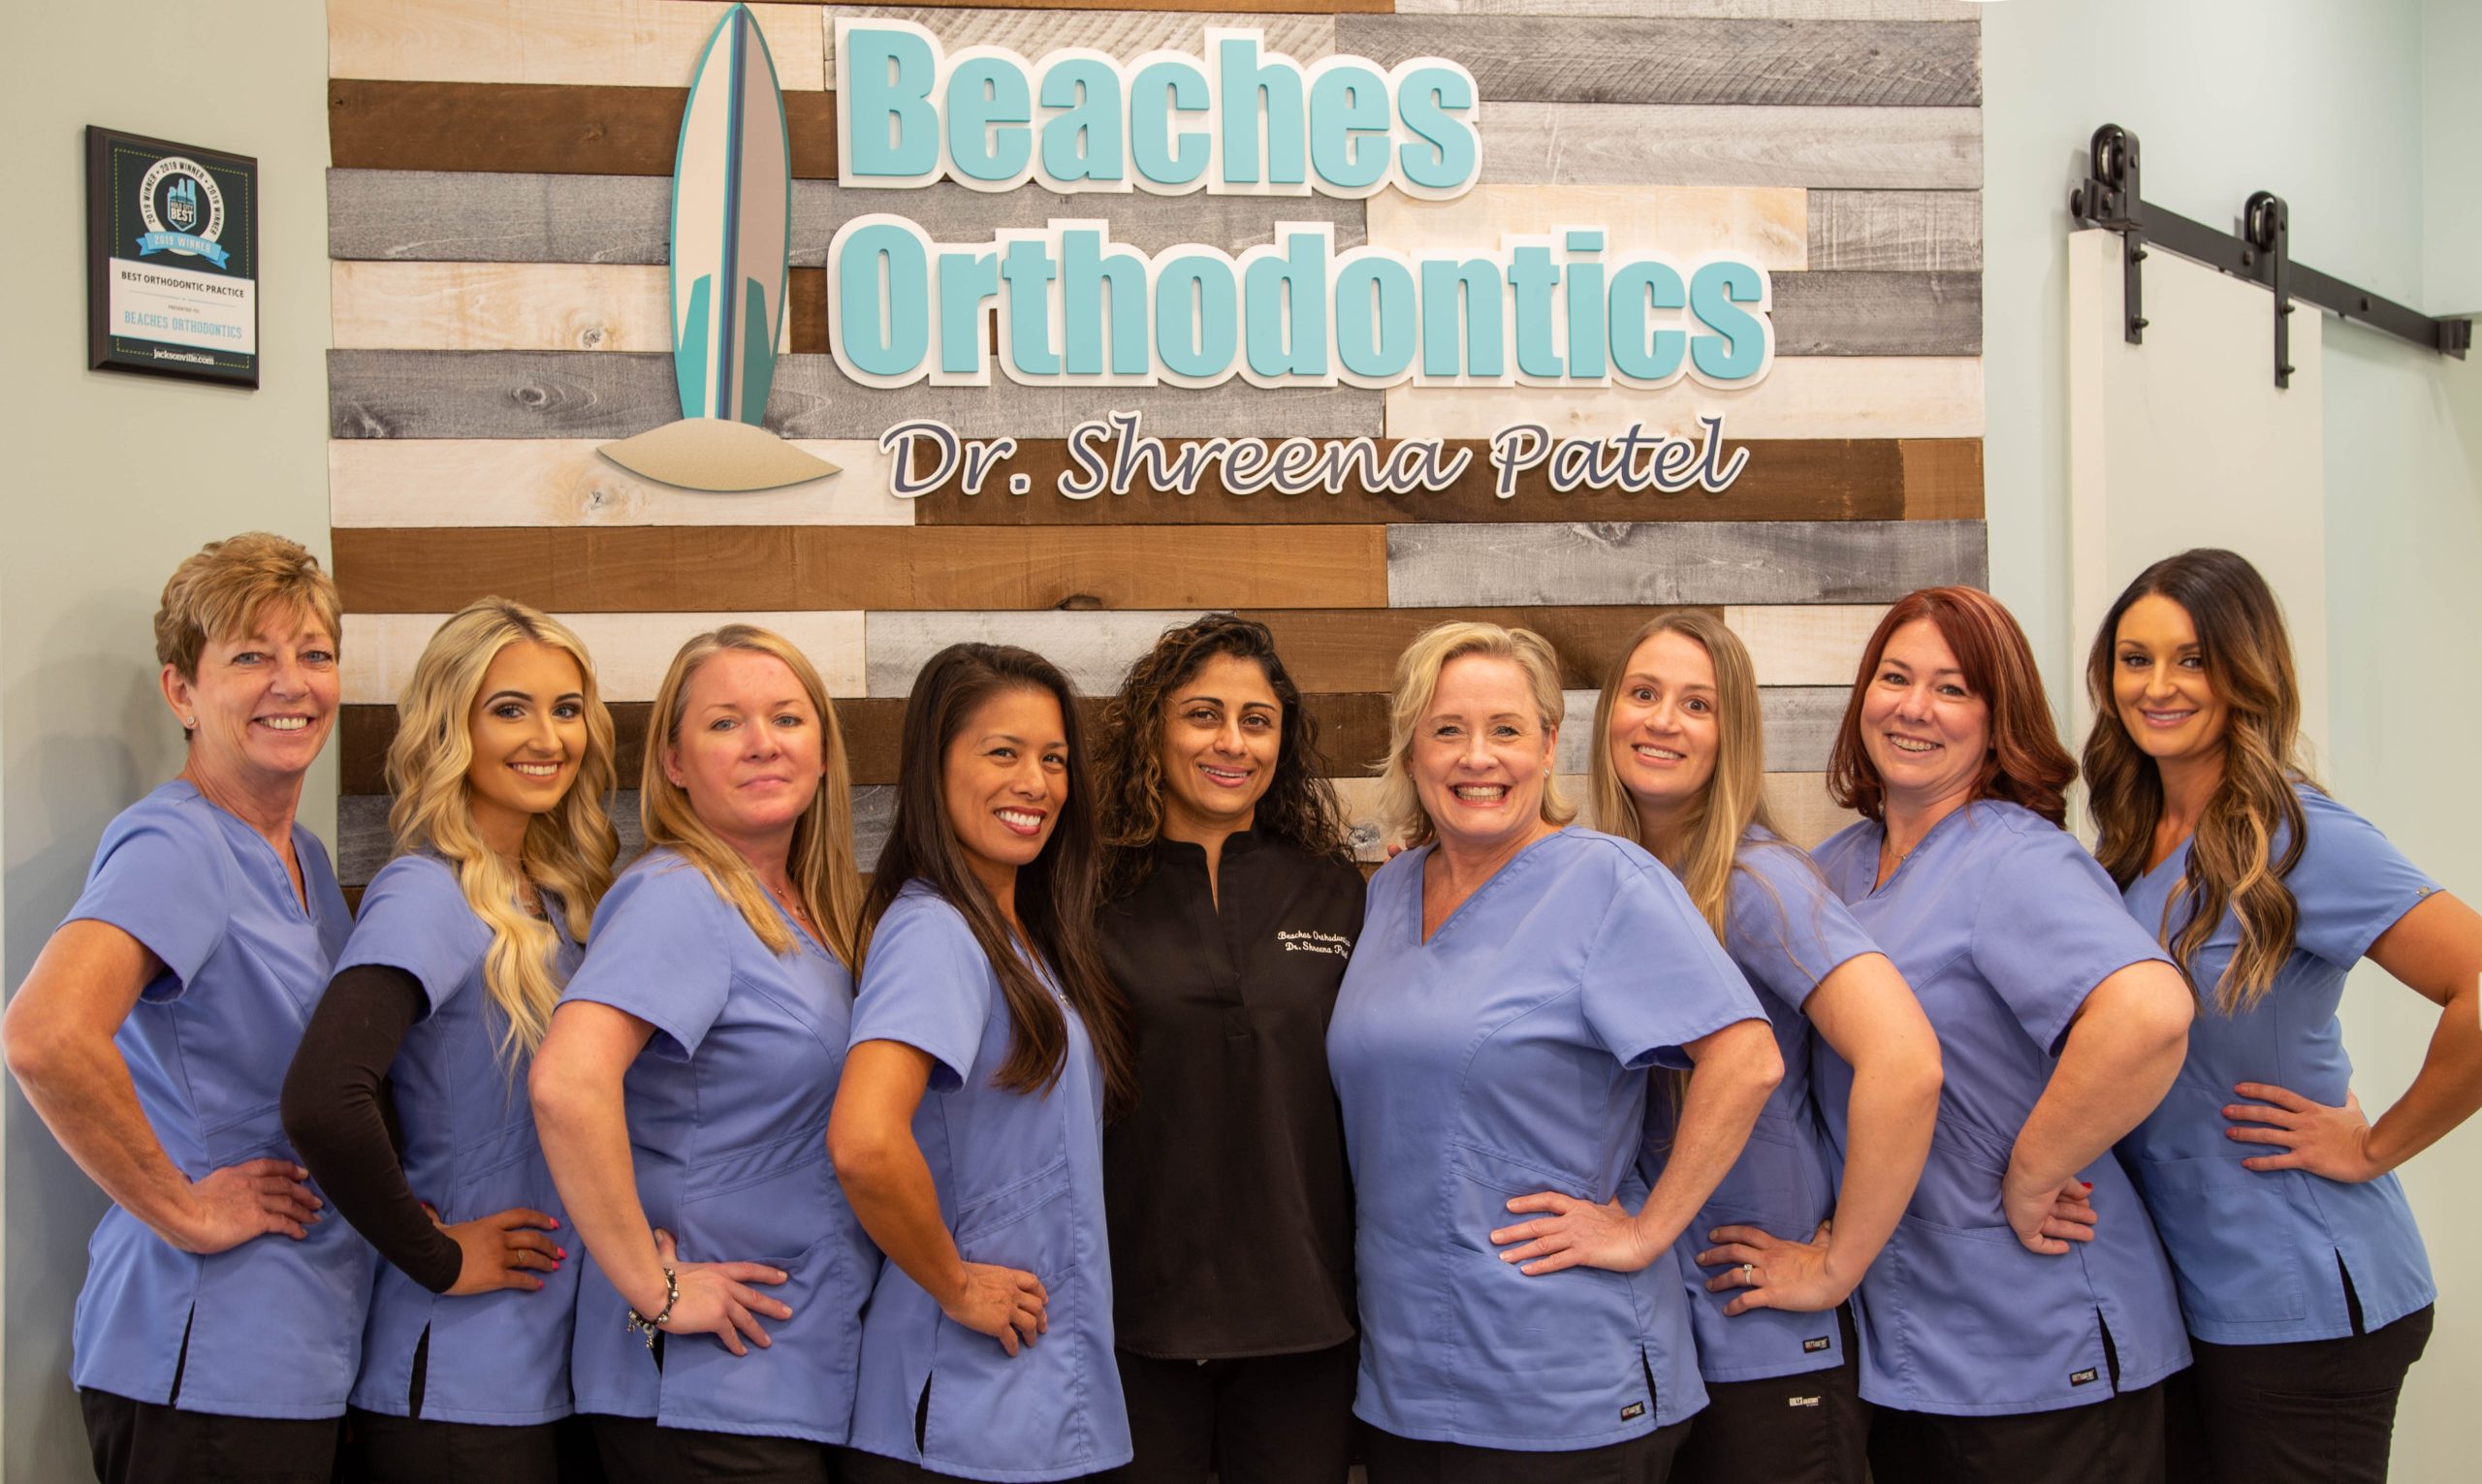 Beaches Orthodontics